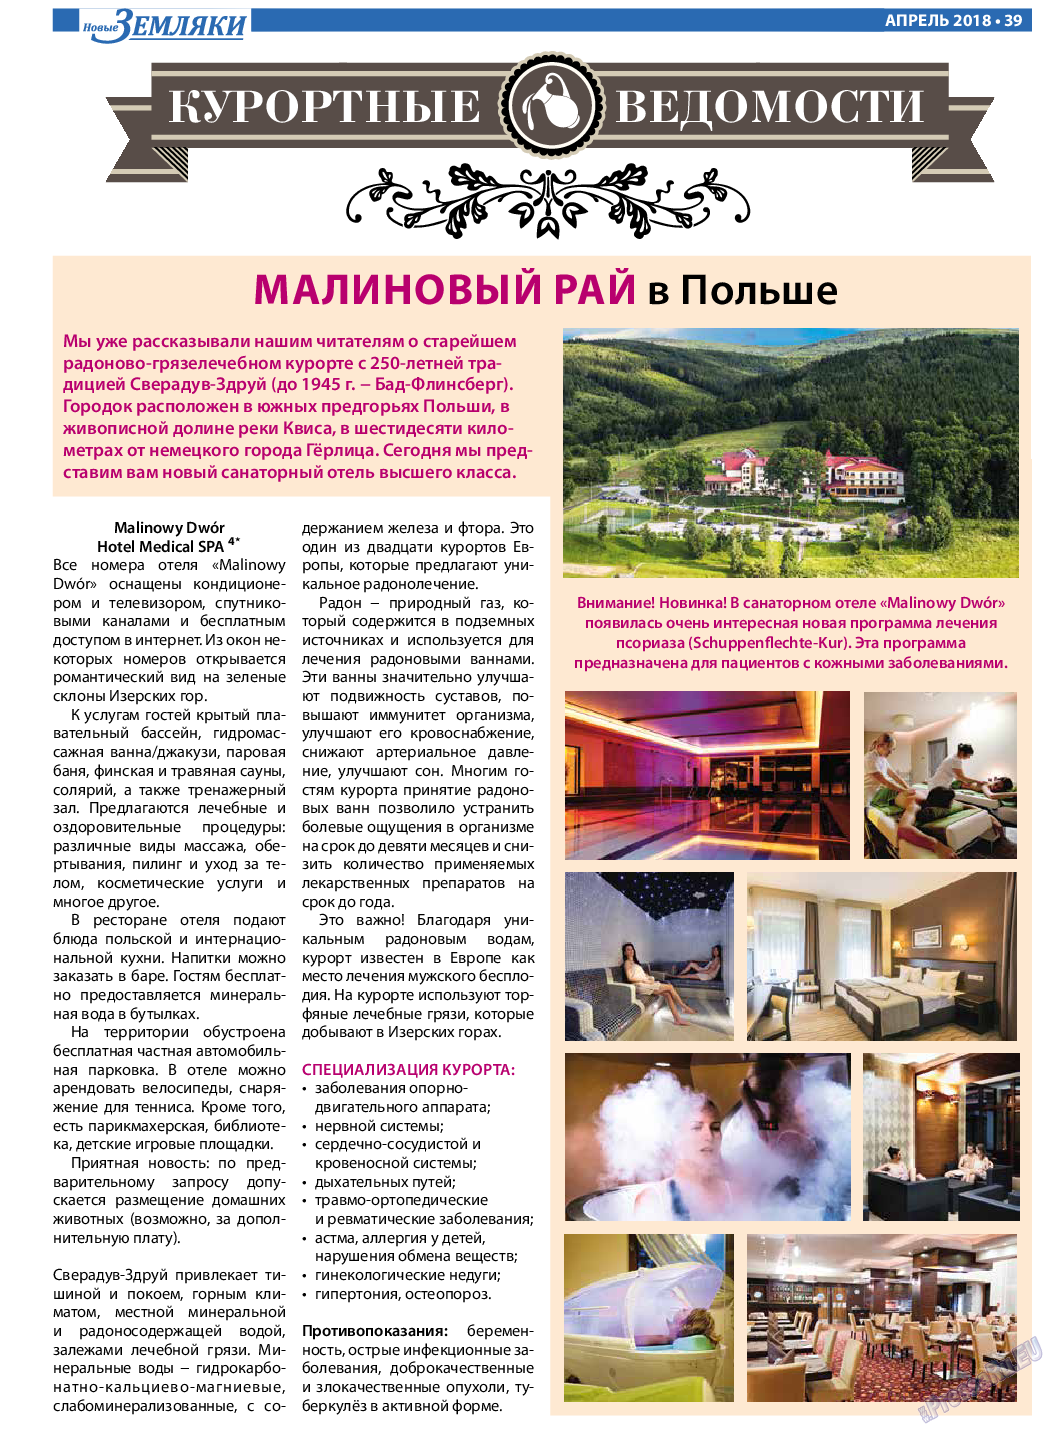 Новые Земляки (газета). 2018 год, номер 4, стр. 39